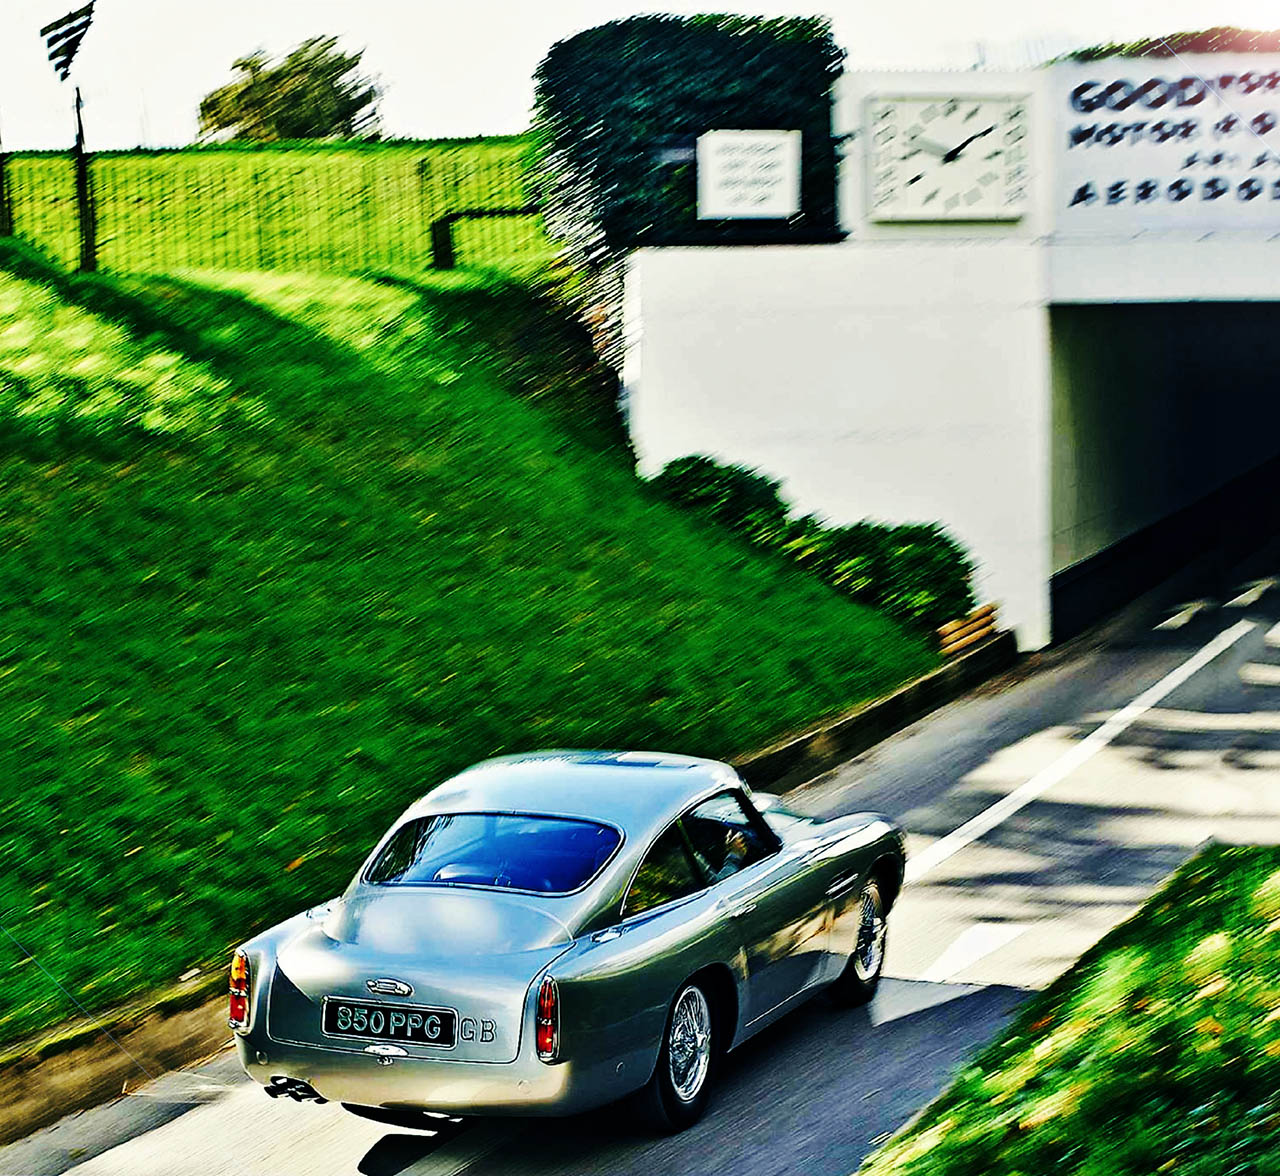 1960 Aston Martin DB4 GT - road test